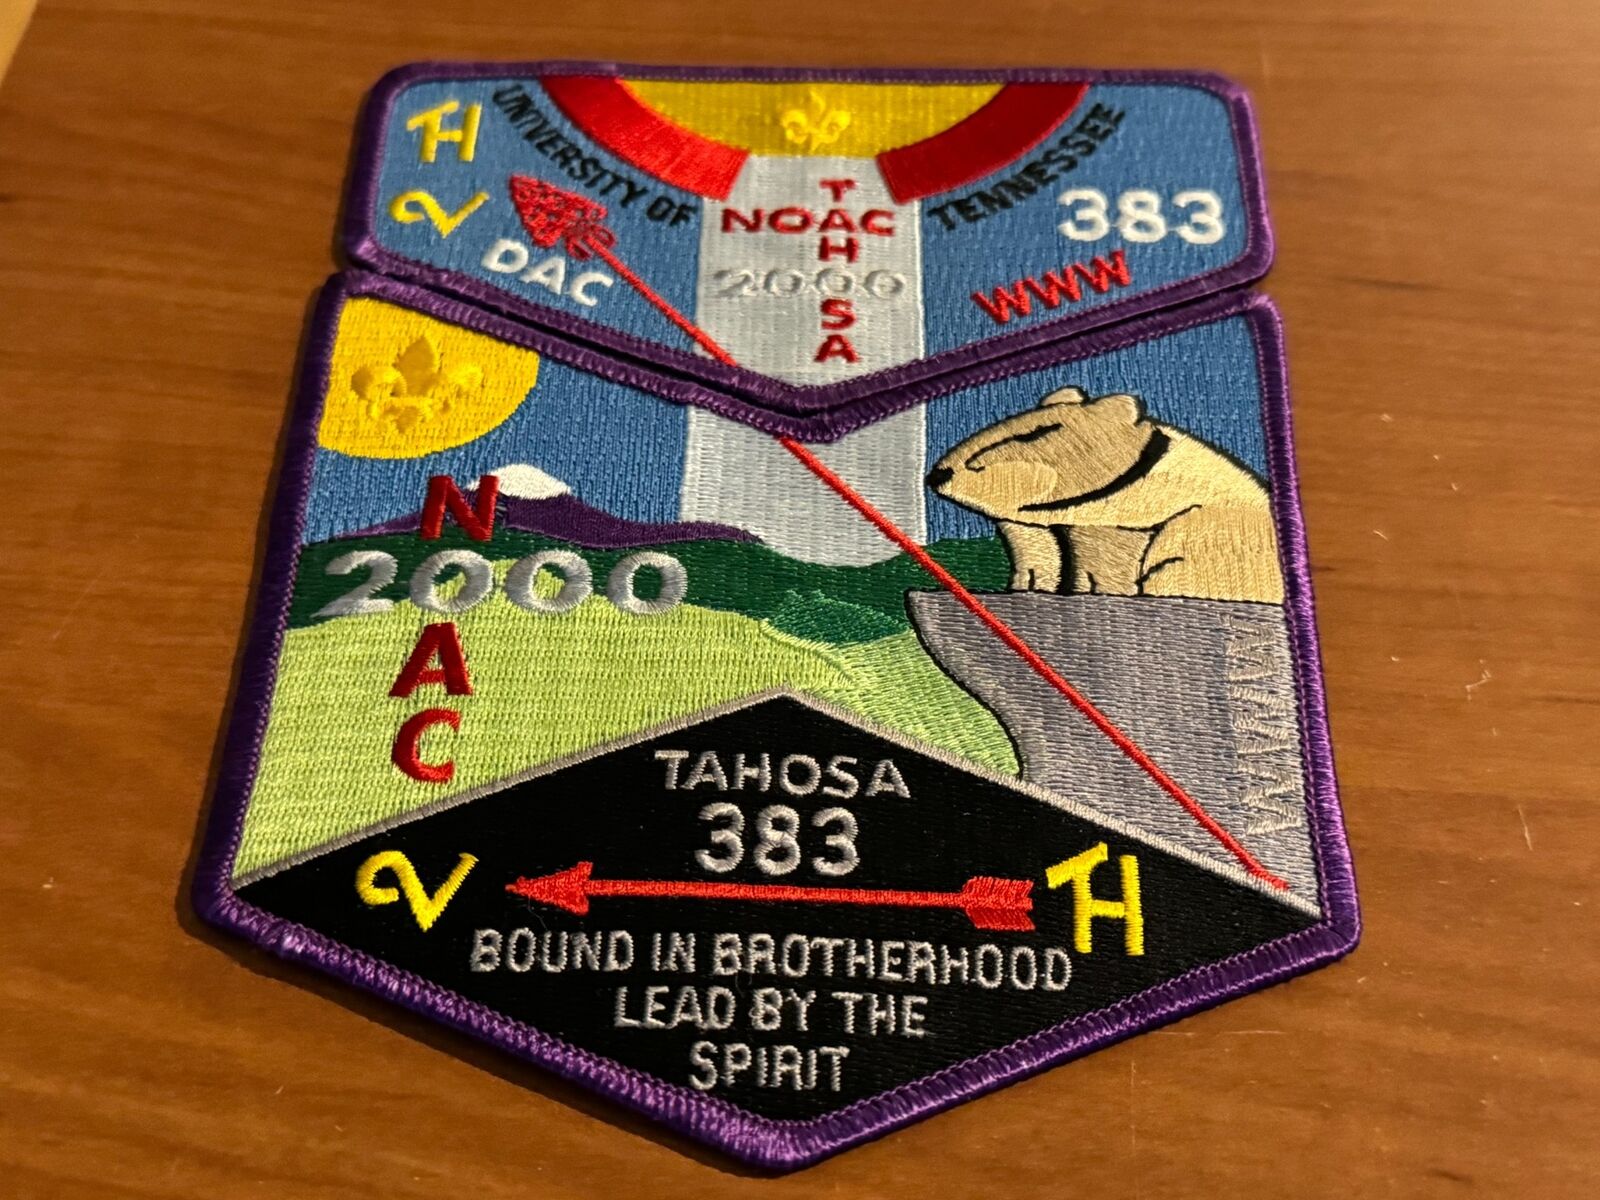 OA, Tahosa (383) 2000 NOAC Patch Set (S-28/X-9)